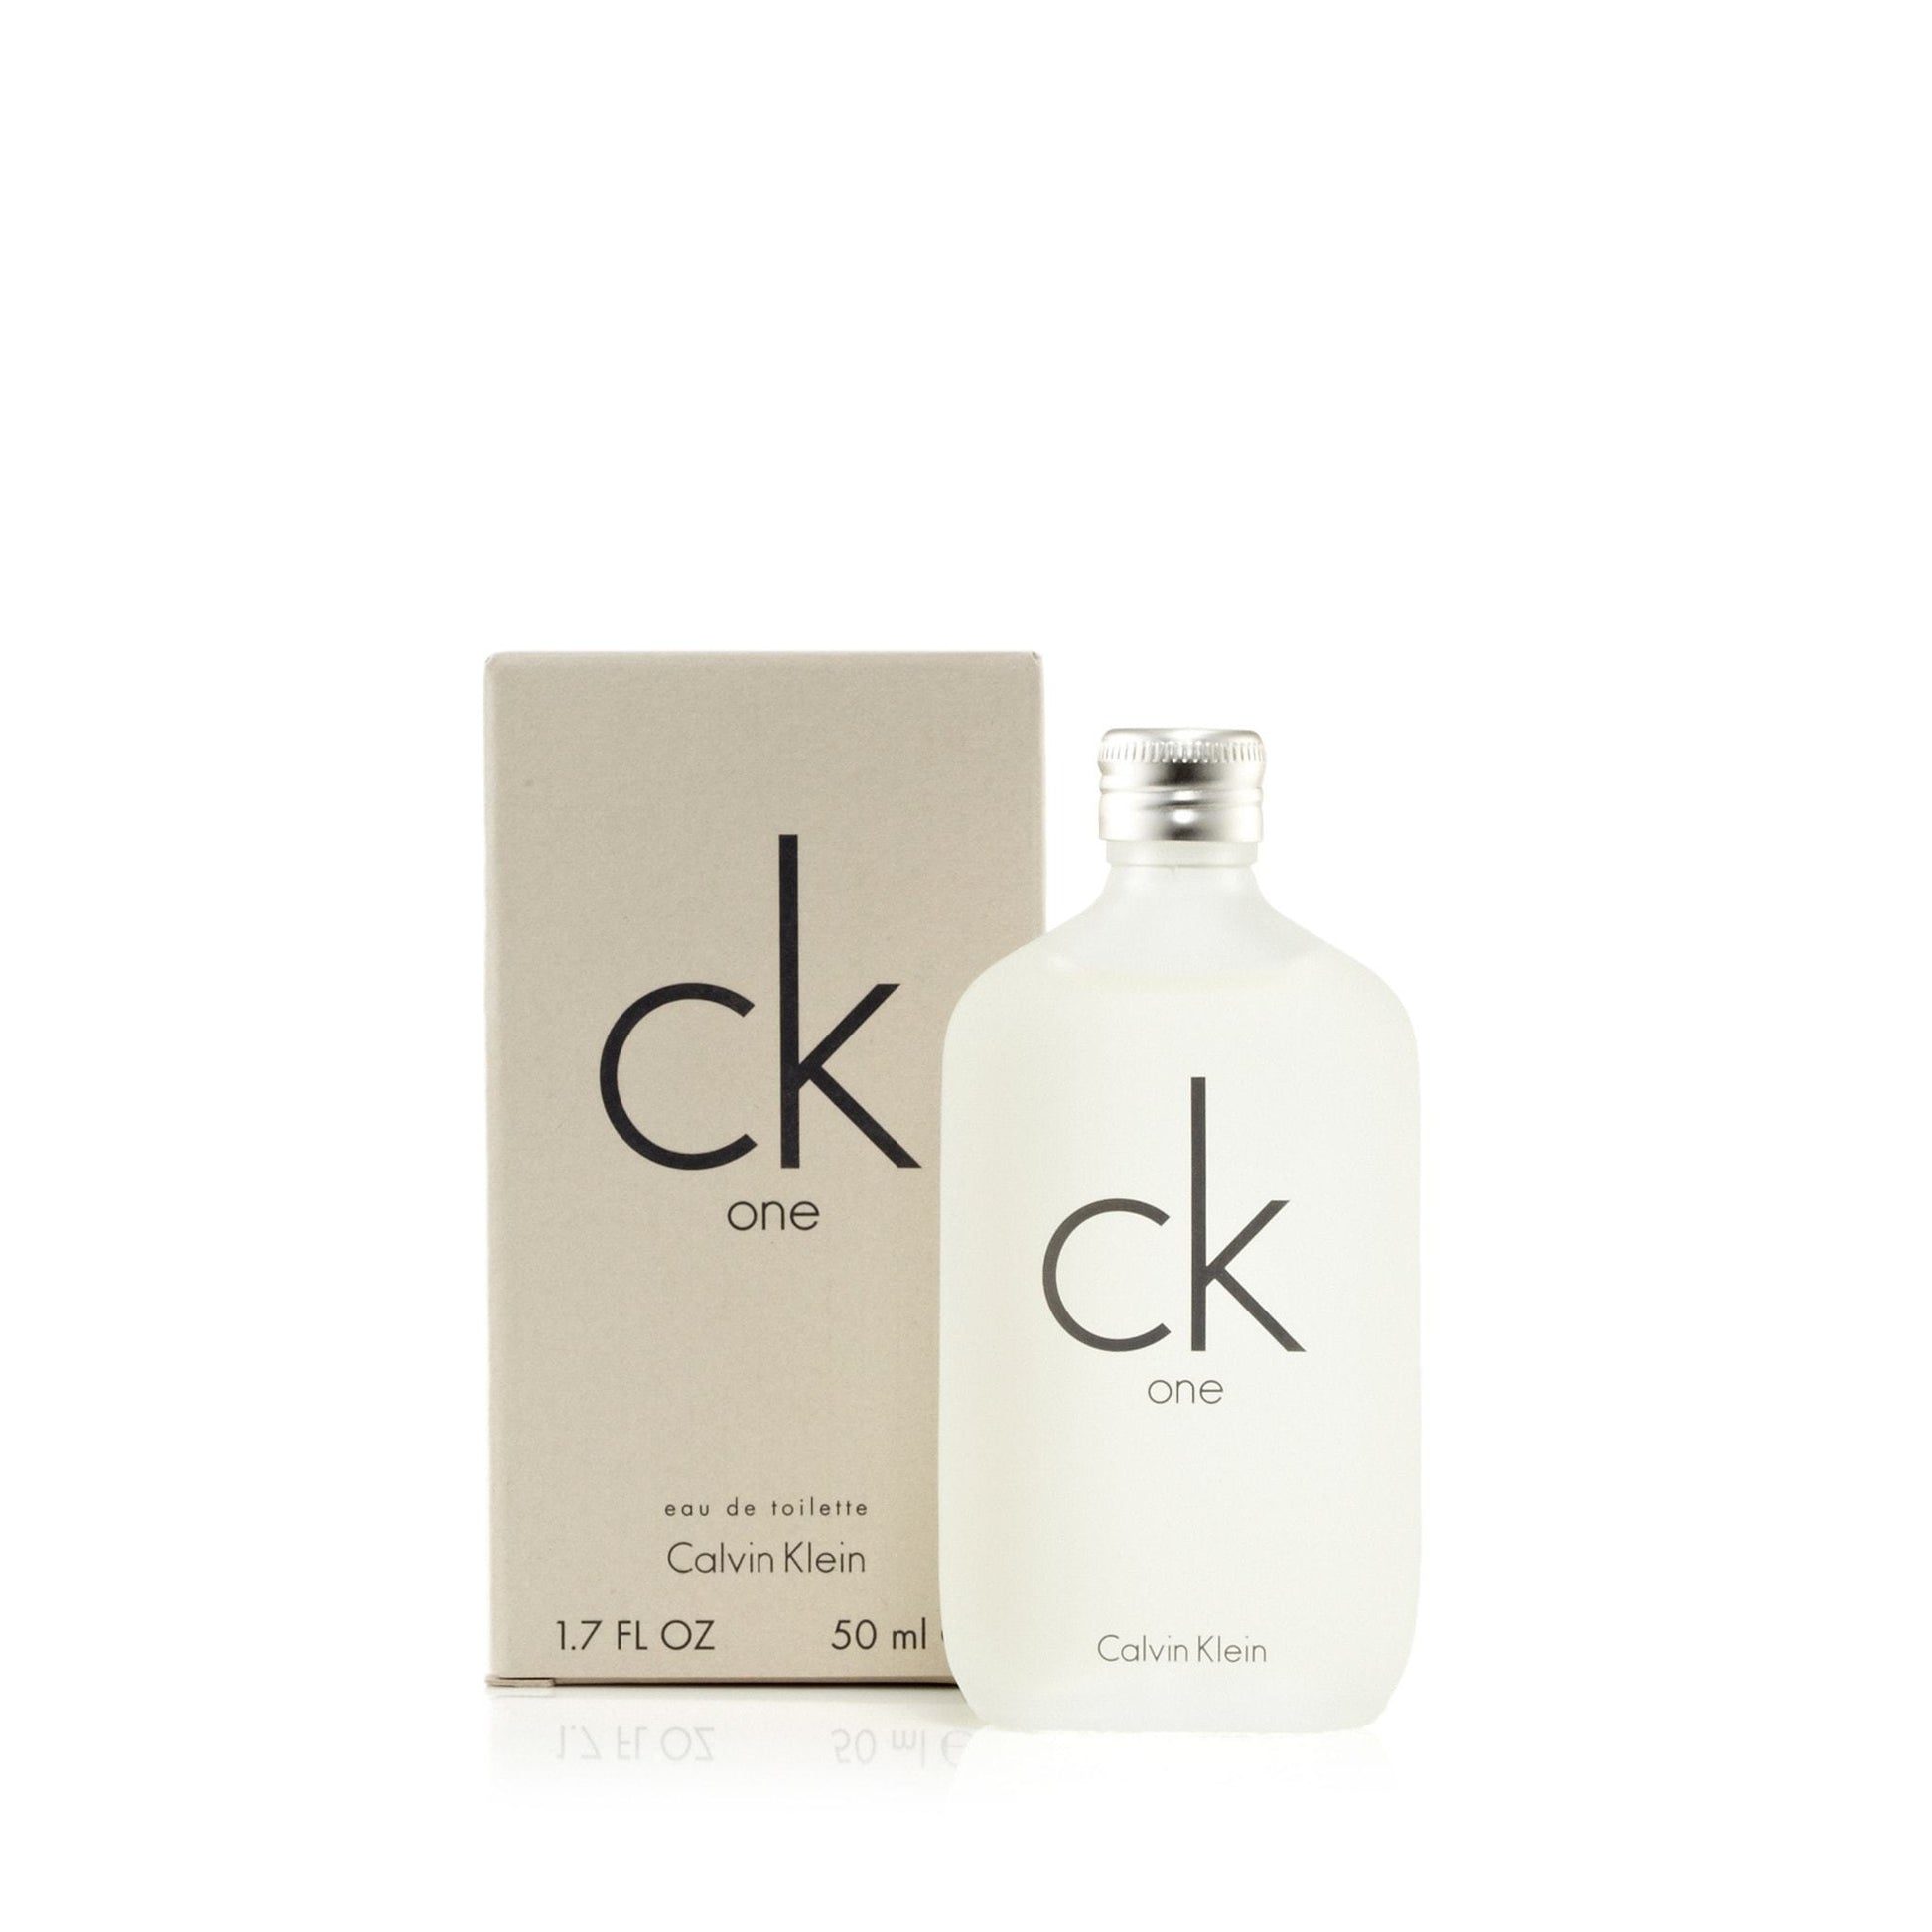 https://www.fragranceoutlet.com/cdn/shop/products/Calvin-Klein-Ck-One-Womens-Eau-de-Toilette-Spray-1.7-Best-Price-Fragrance-Parfume-FragranceOutlet.com-Details.jpg?v=1626990650&width=1946